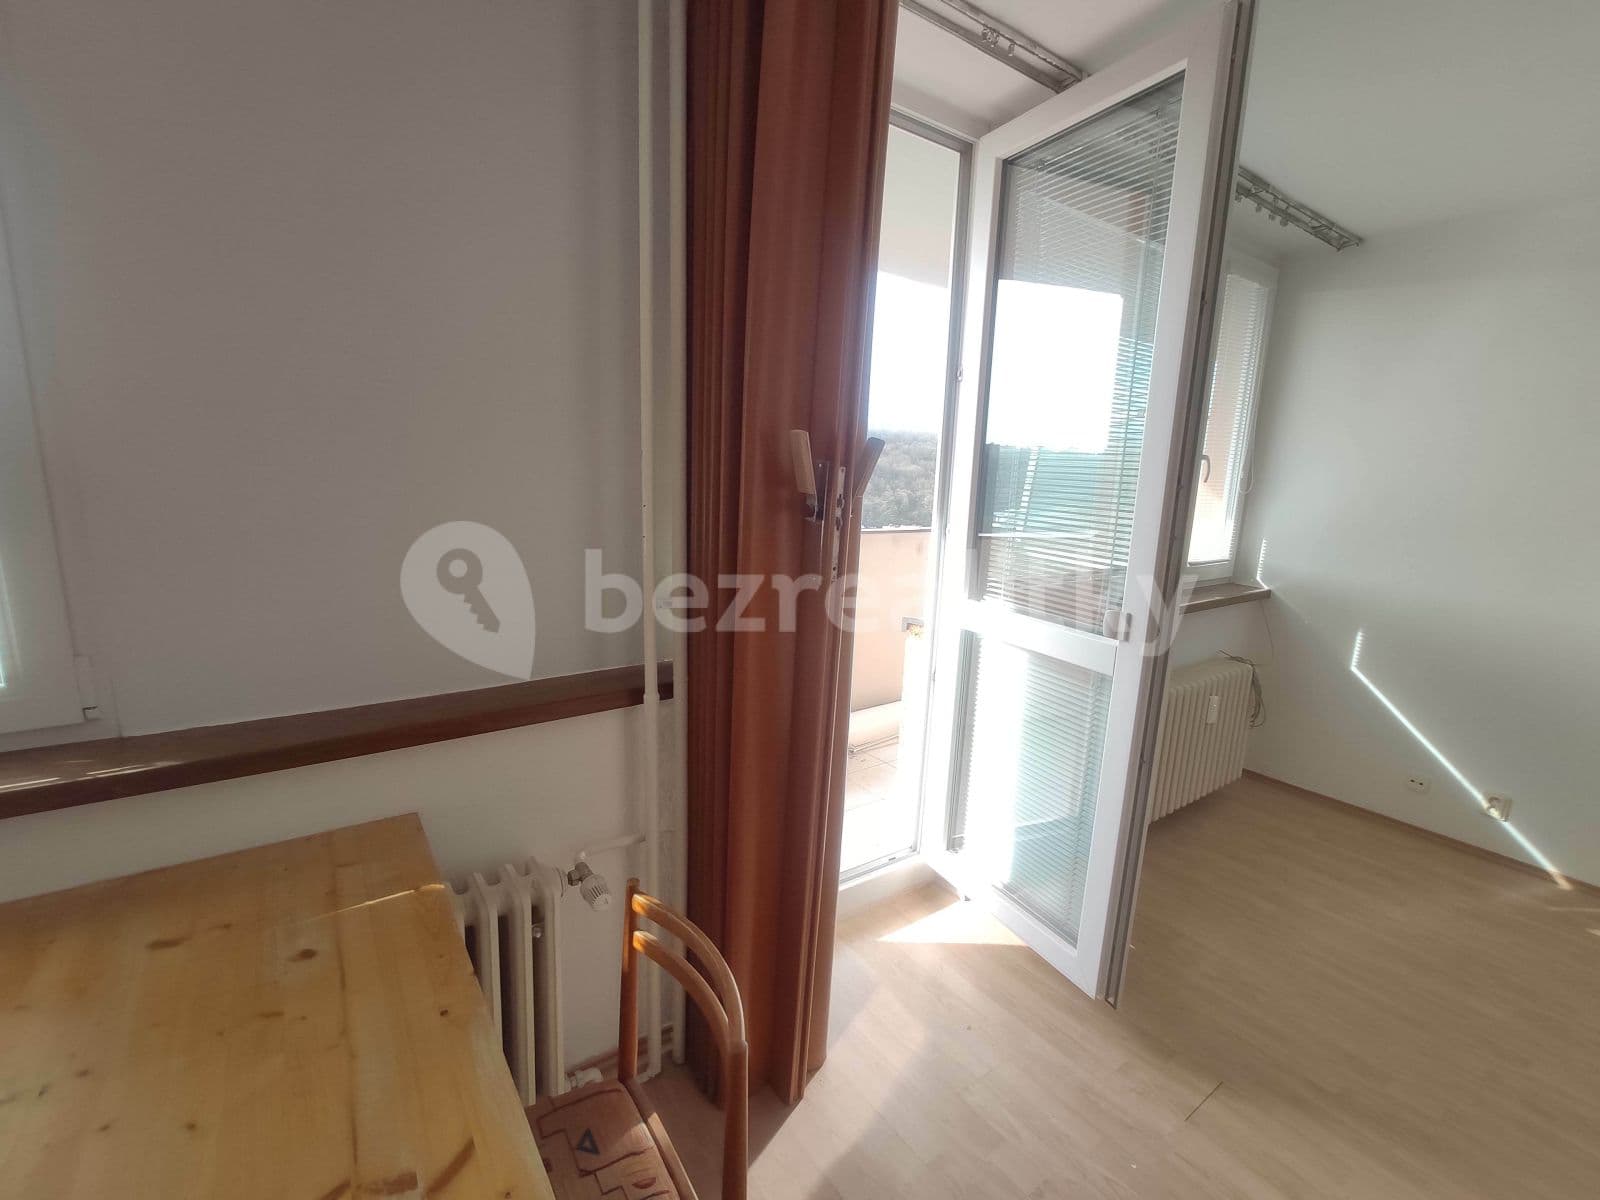 1 bedroom flat to rent, 45 m², Mošnova, Prague, Prague